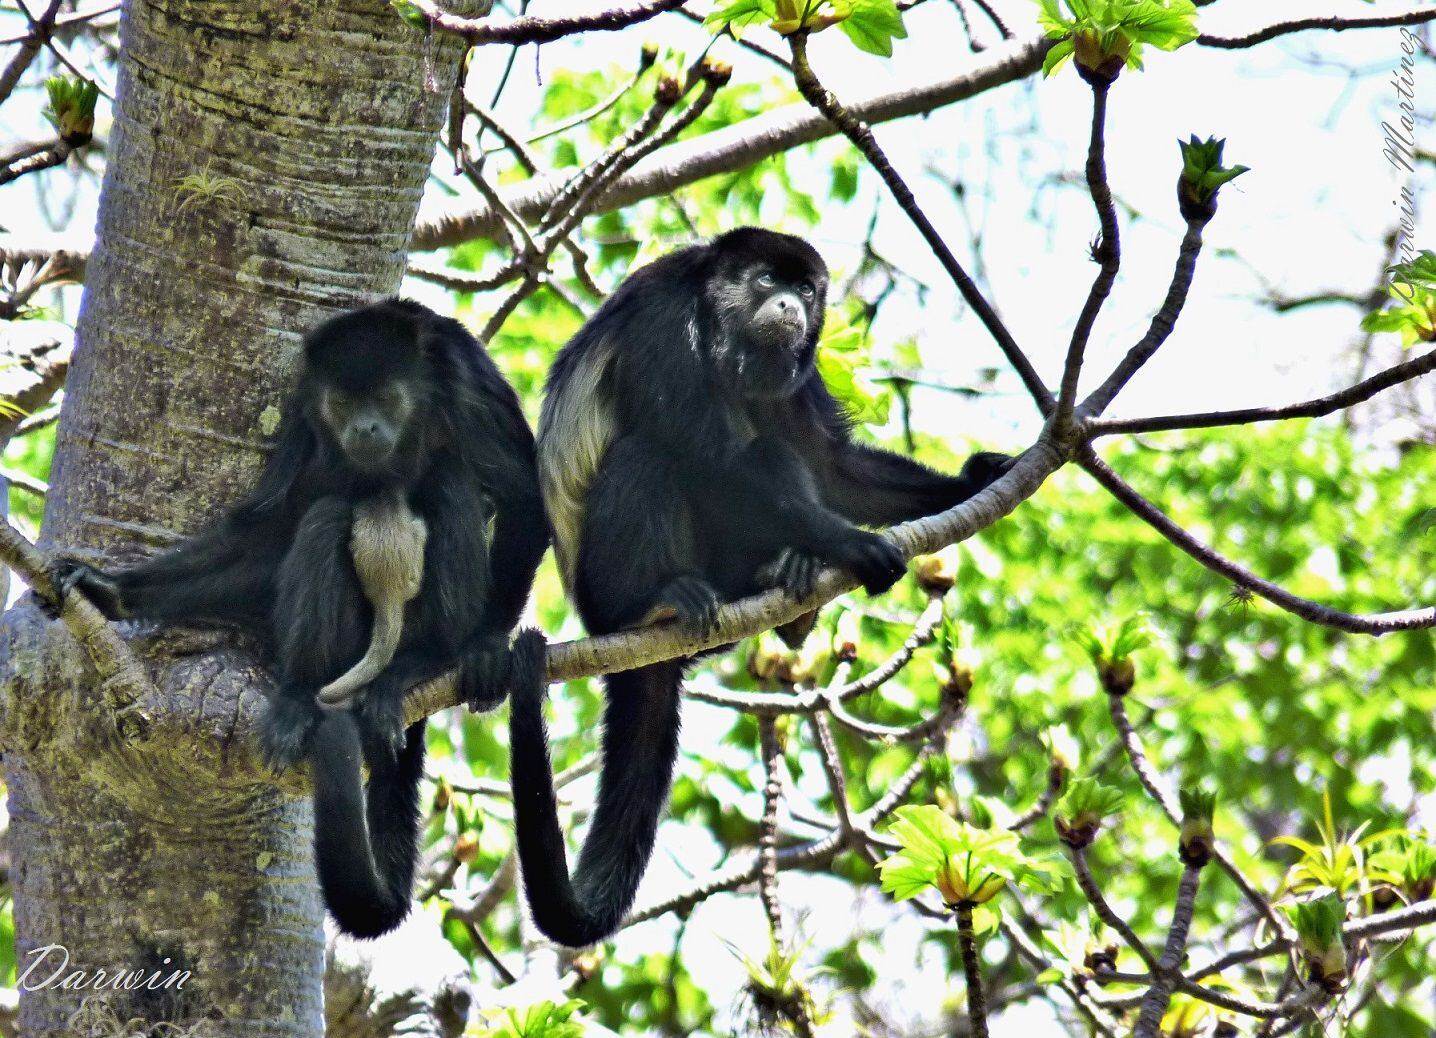 Según Pérez, la población de monos aulladores ya demuestra afectaciones, pues se reportaron monos con leucismo (de coloración blanca) en Cerro Blanco en 2023. Esto indica reproducción entre parientes cercanos, puesto que los primates han perdido conexión con otras poblaciones por menoscabo de hábitat.